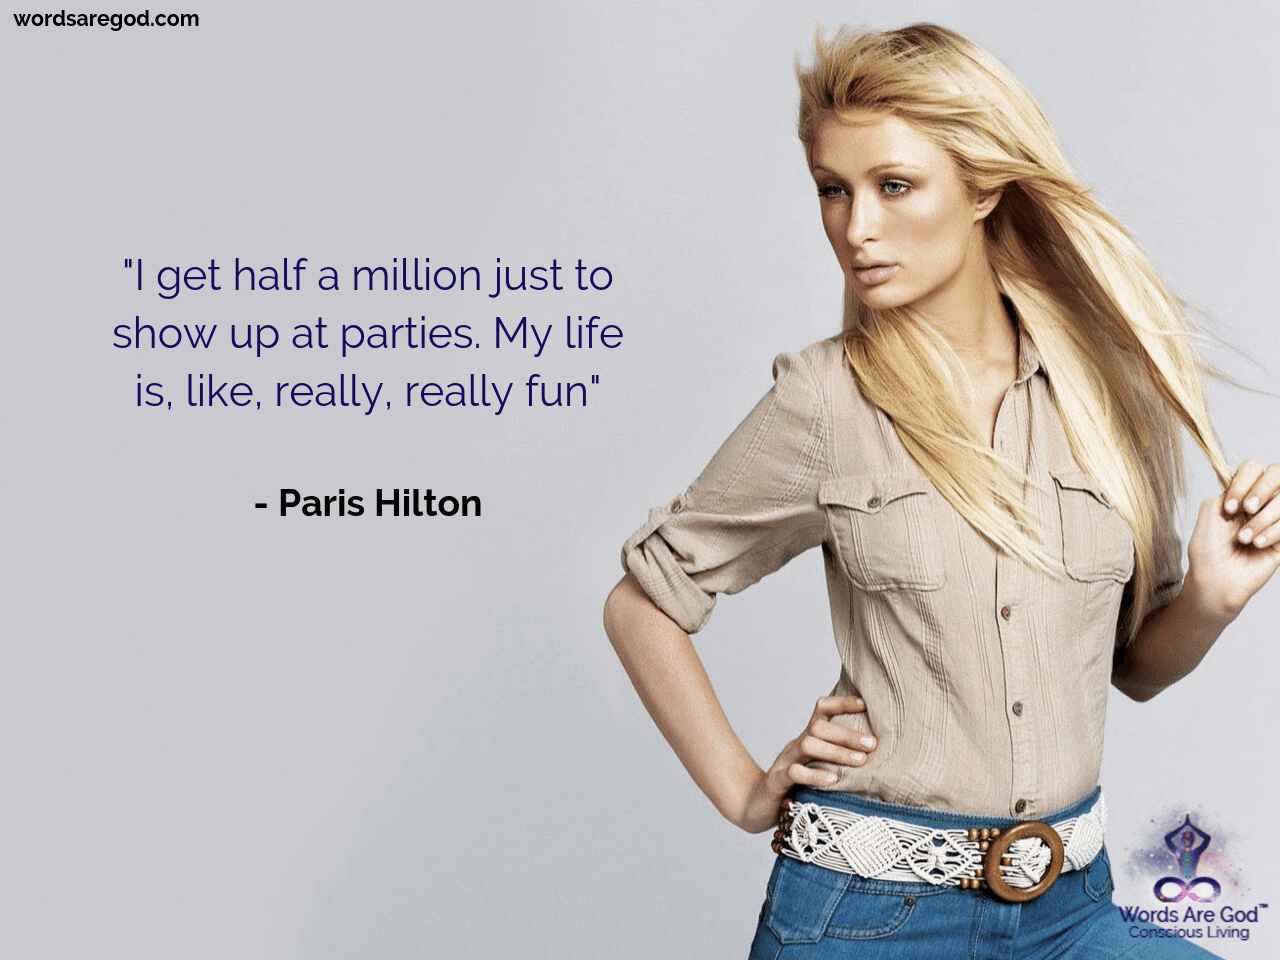 Paris Hilton Motivational Quotes